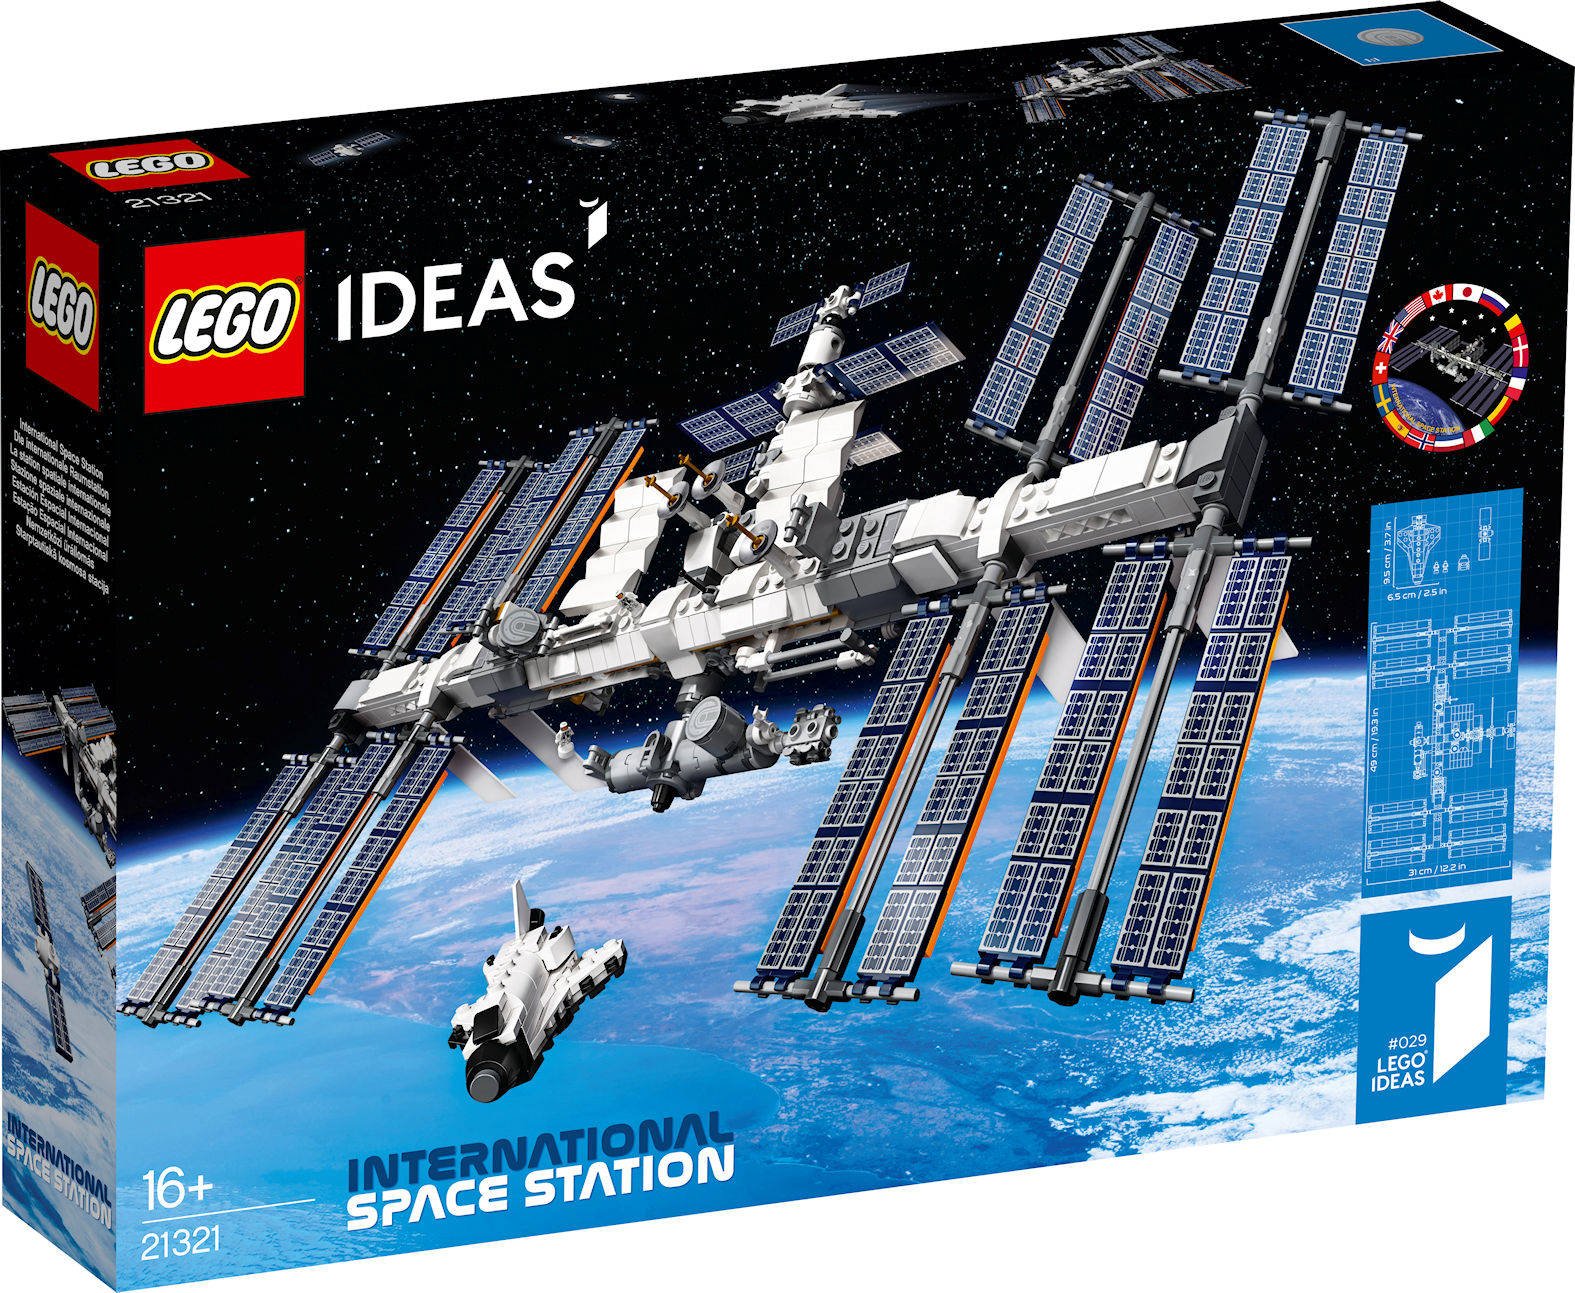 Immagine di LEGO: presentato ufficialmente il nuovo set LEGO Ideas 21321 "International Space Station"